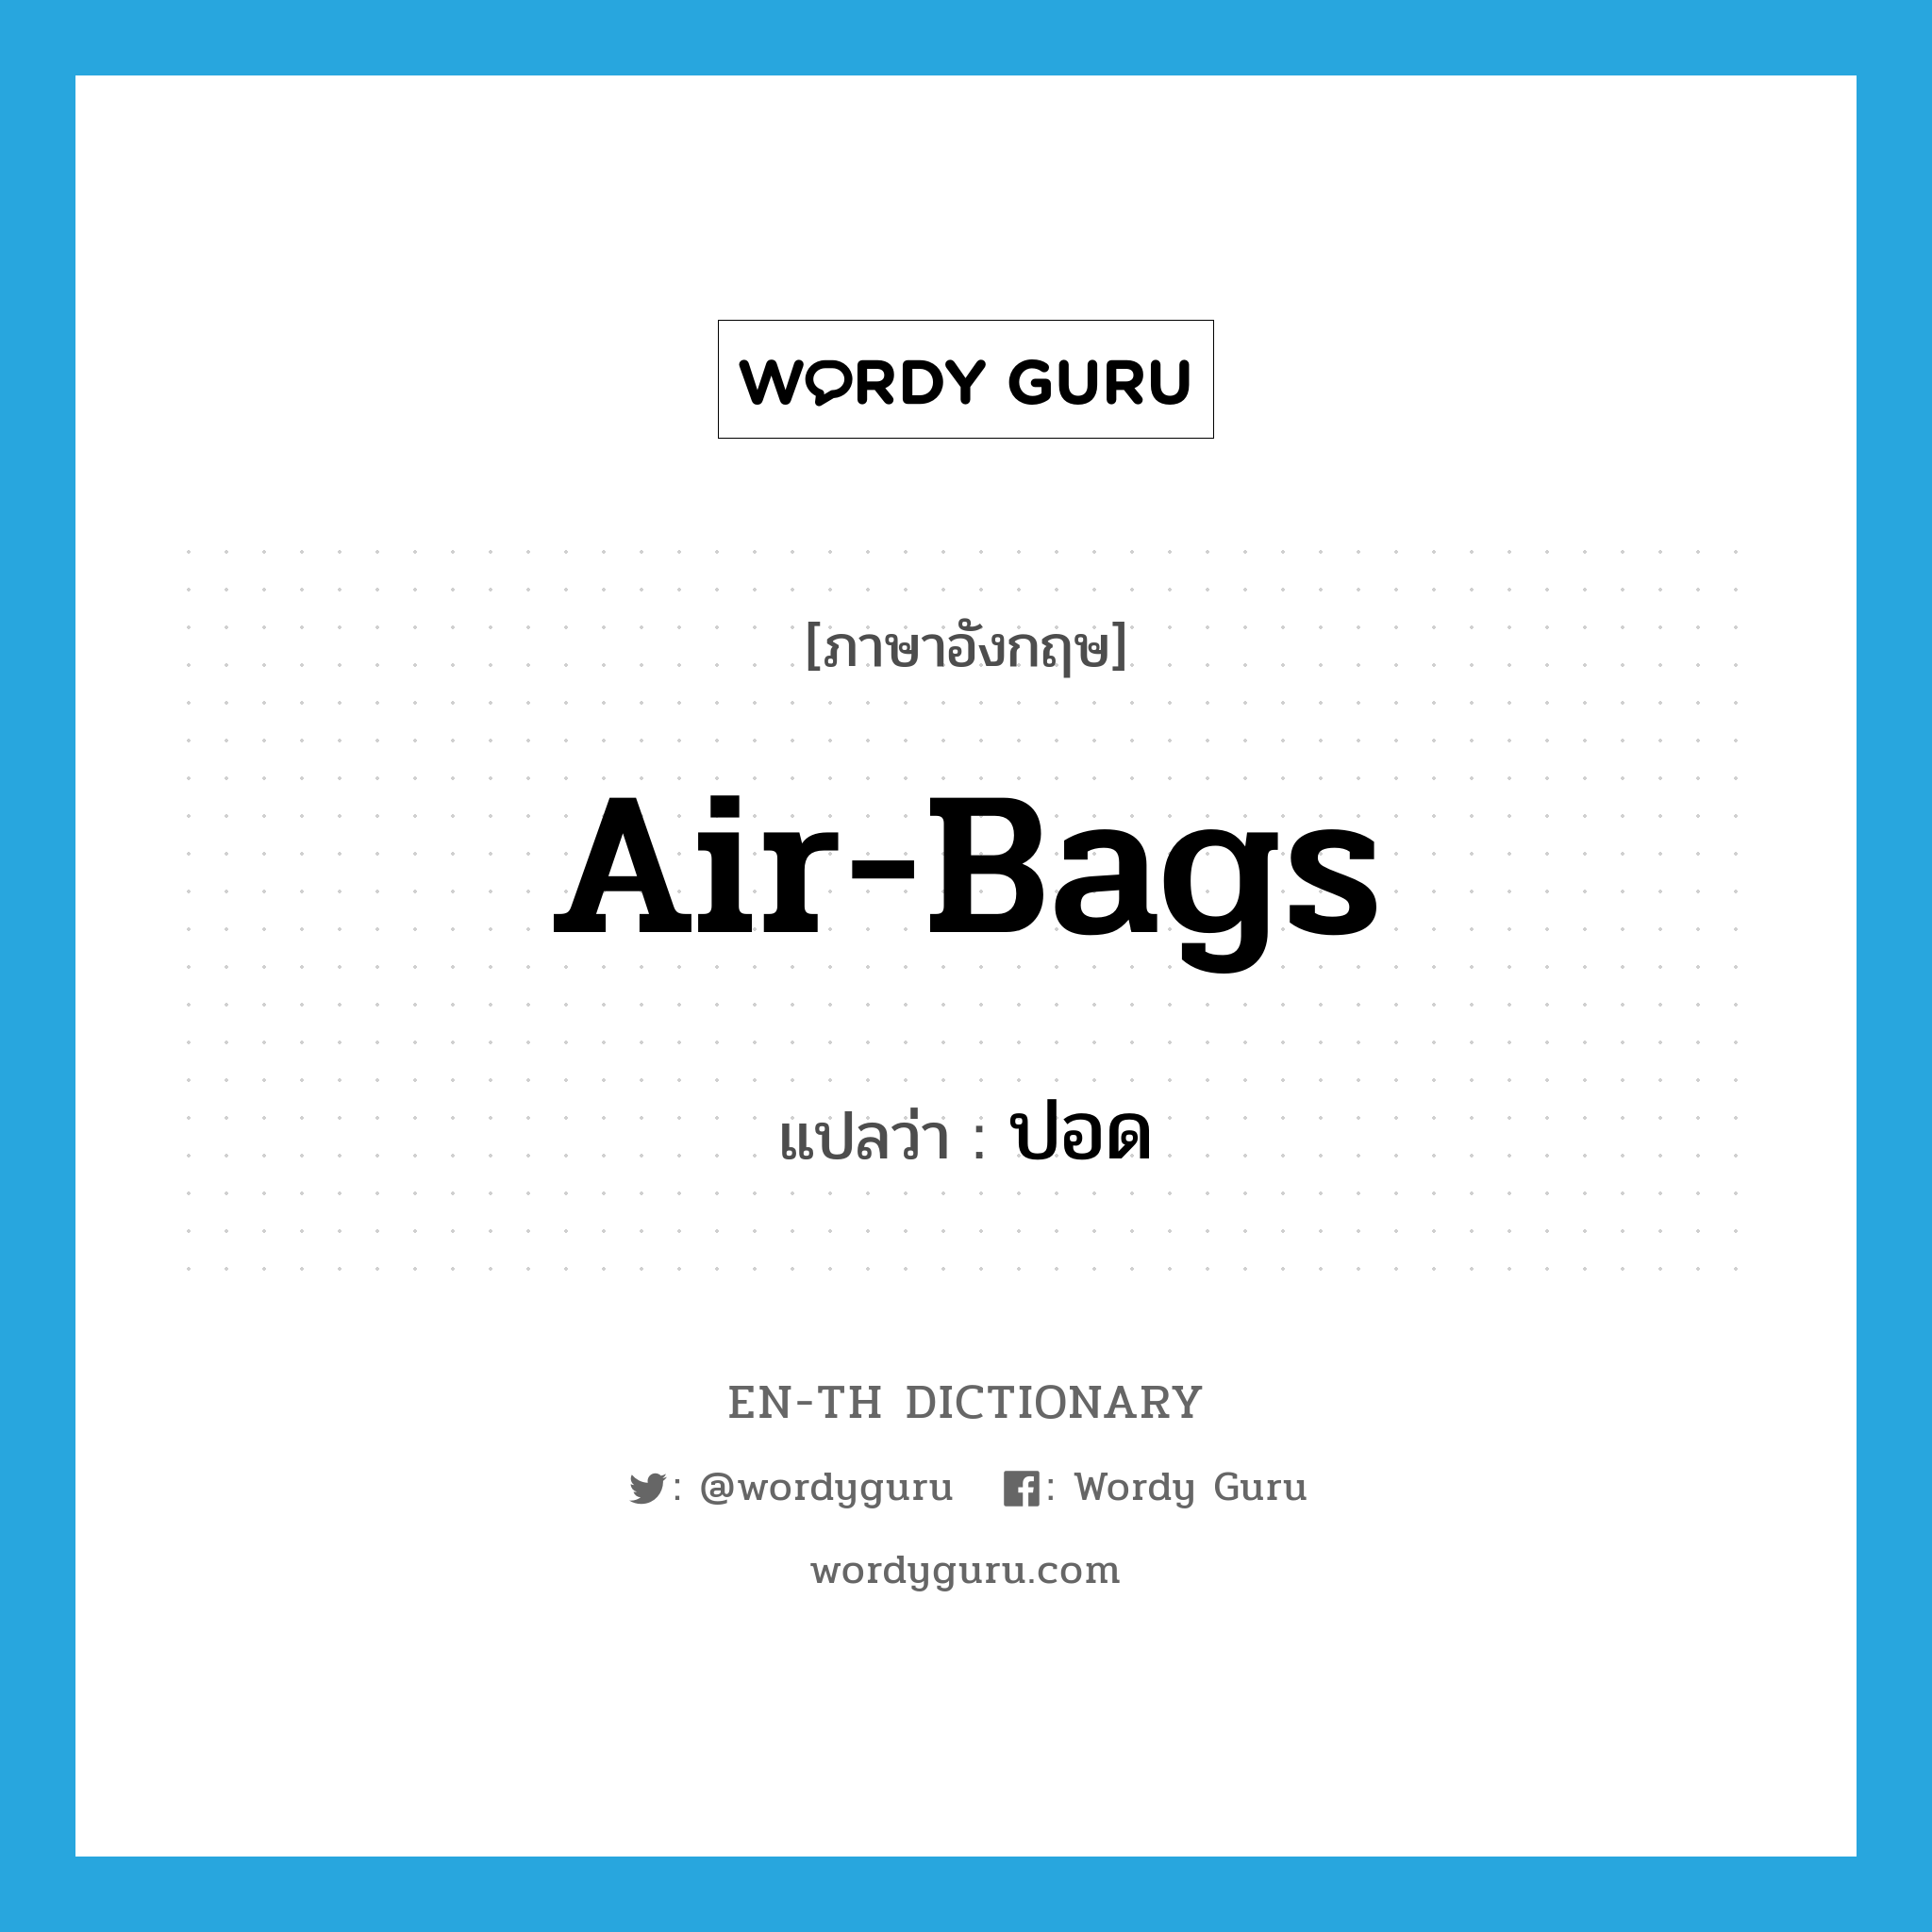 air-bags แปลว่า? คำศัพท์ในกลุ่มประเภท SL, คำศัพท์ภาษาอังกฤษ air-bags แปลว่า ปอด ประเภท SL หมวด SL